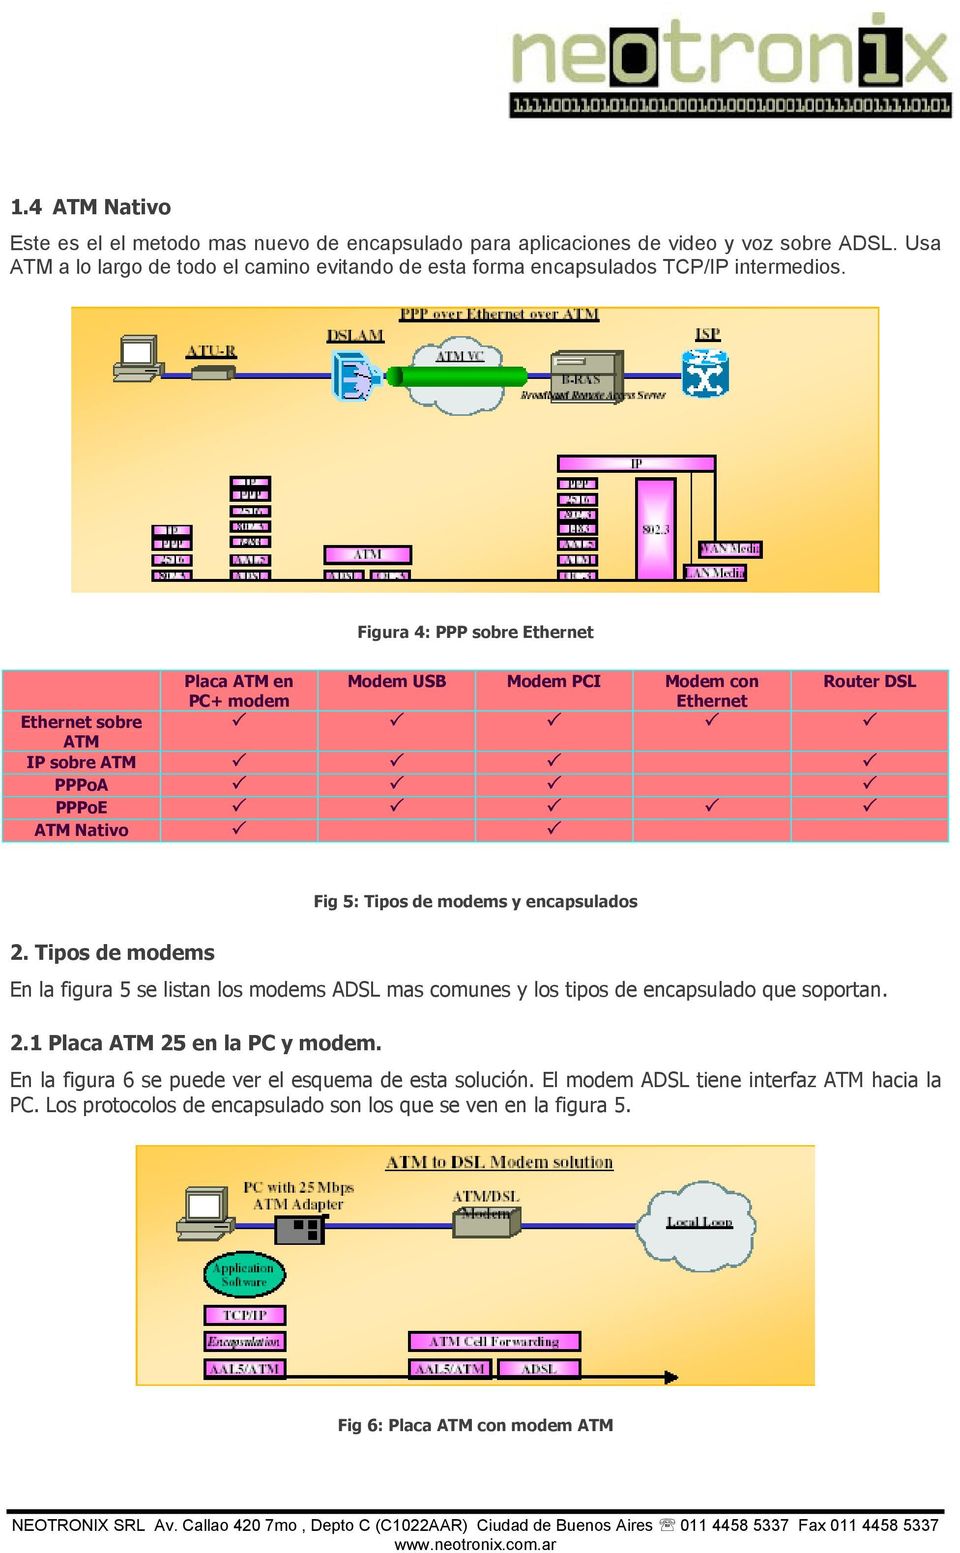 Figura 4: PPP sobre Ethernet Ethernet sobre ATM Placa ATM en PC+ modem Modem USB Modem PCI Modem con Ethernet Router DSL IP sobre ATM PPPoA PPPoE ATM Nativo Fig 5: Tipos de modems y